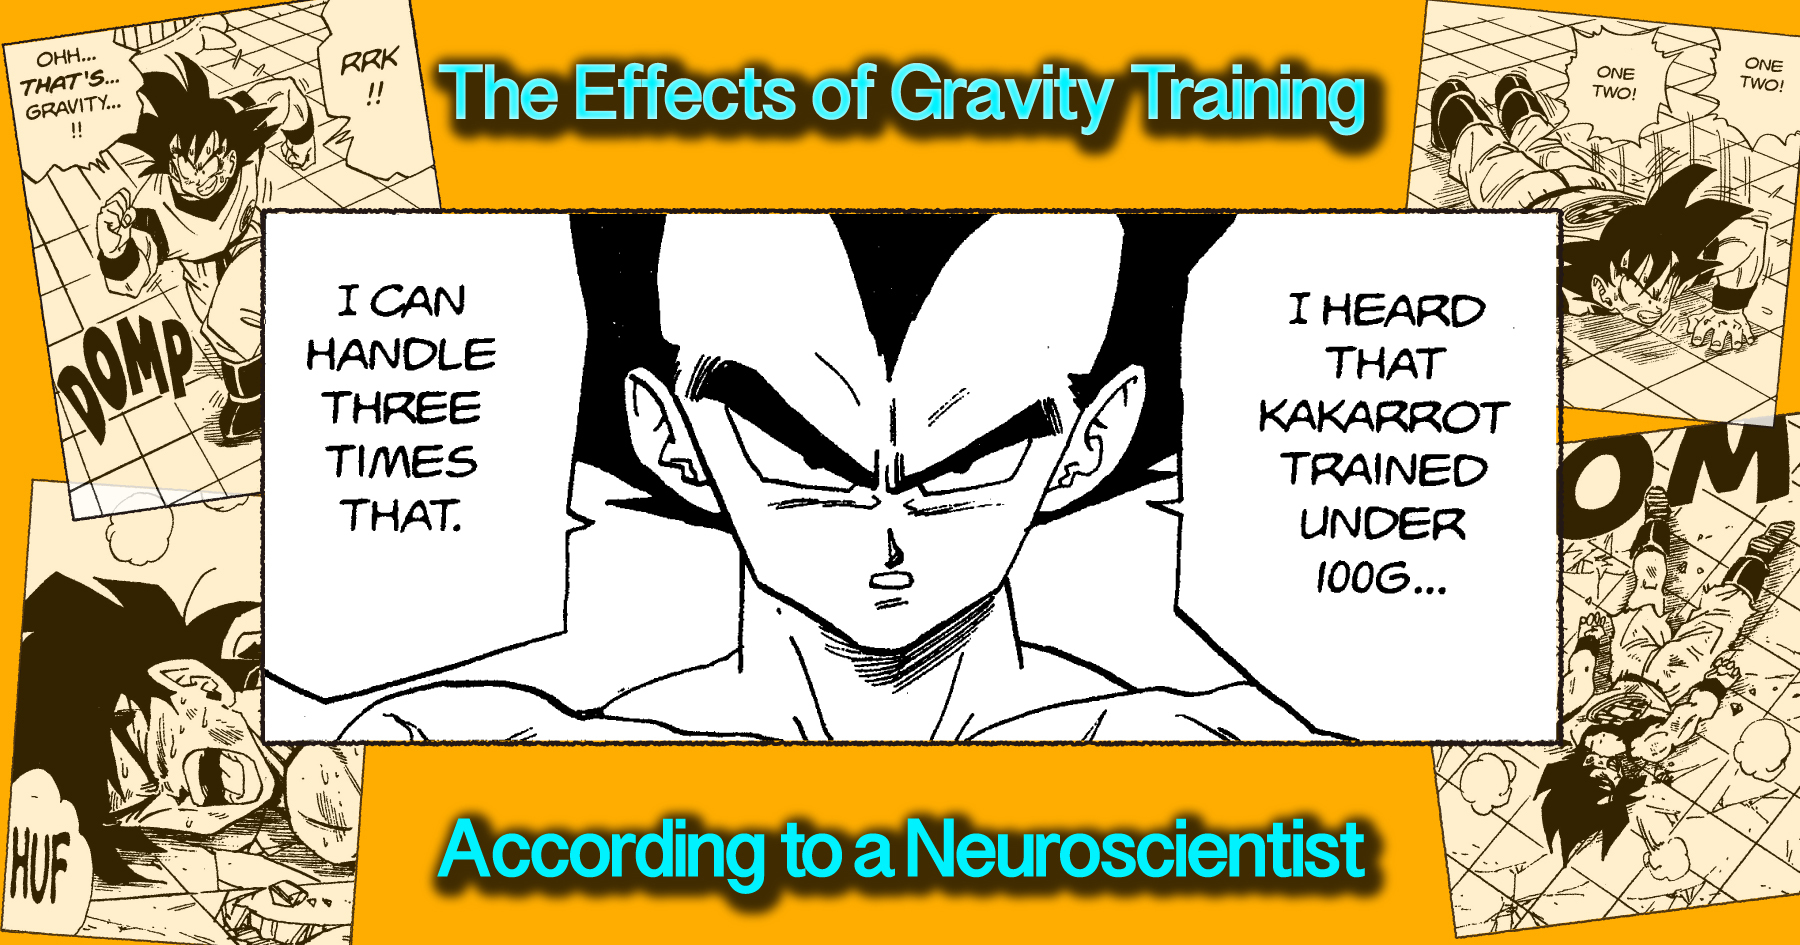 L' Training par gravité de Dragon Ball fonctionnerait-il vraiment ? Nous avons demandé des réponses à un véritable neuroscientifique !